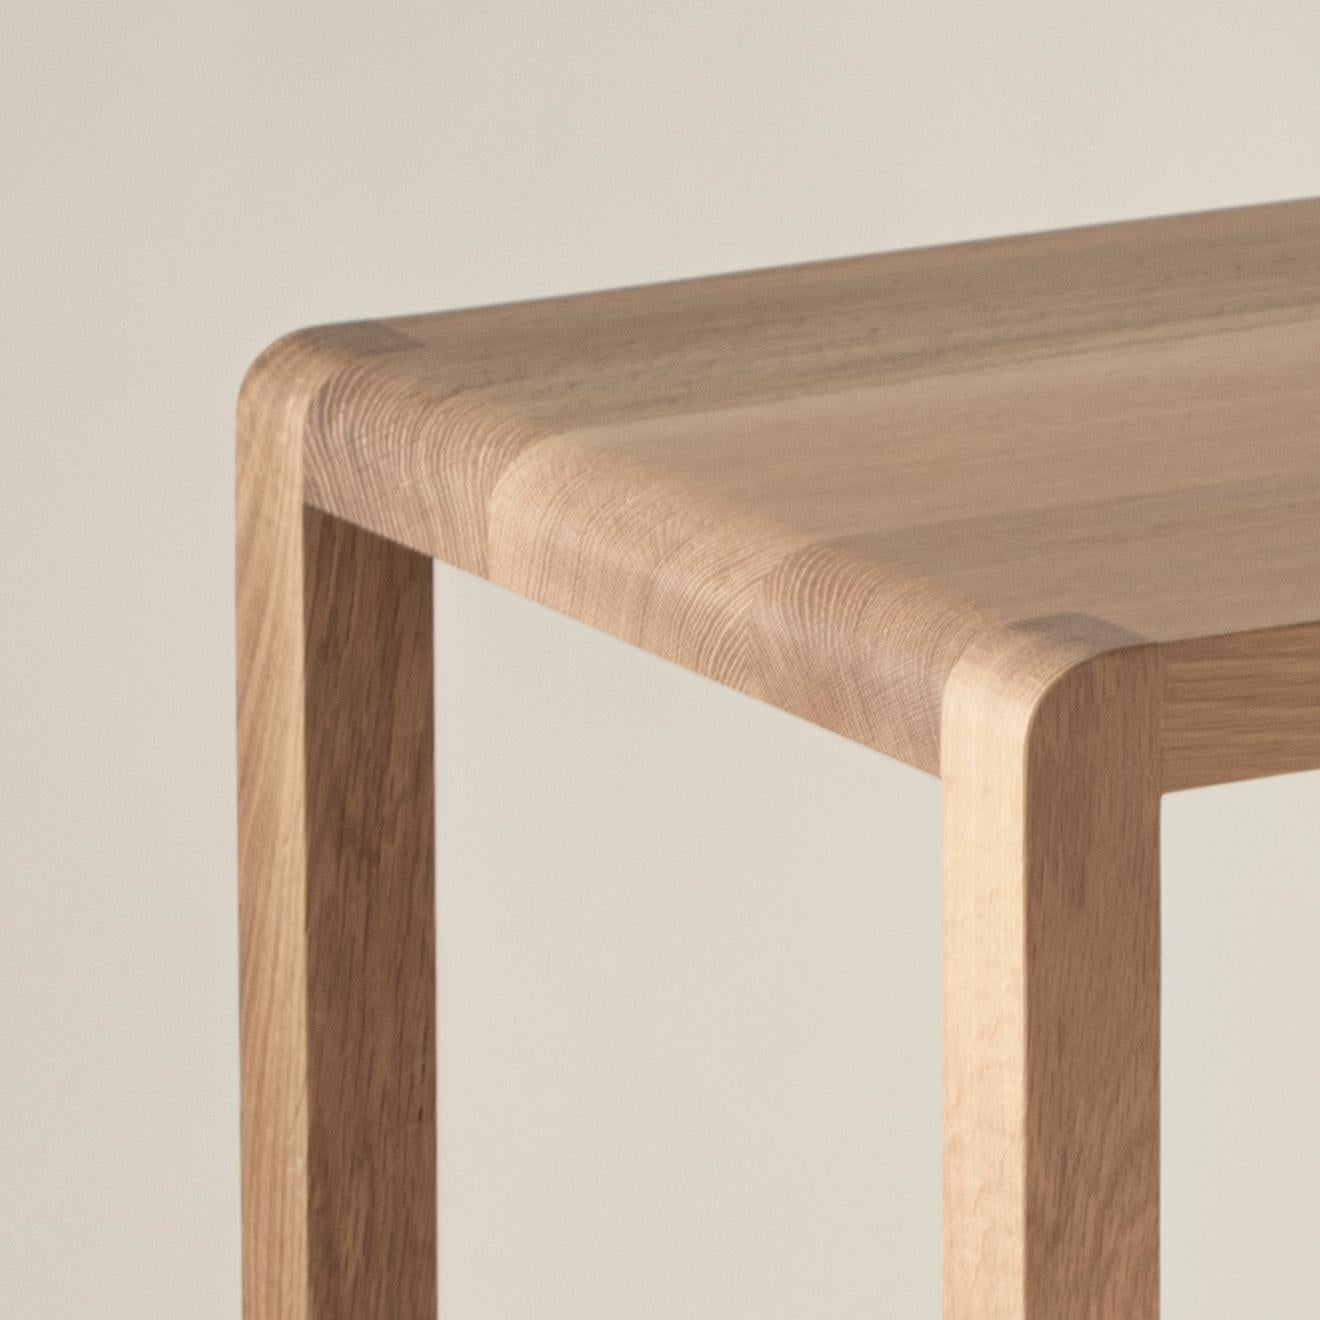 Le tabouret Box est un tabouret de cuisine en bois massif fabriqué sur mesure à la hauteur d'assise que vous souhaitez. Nous recevons régulièrement des demandes de tabourets à hauteur personnalisée, et BOX : STOOL a été conçu pour fonctionner en